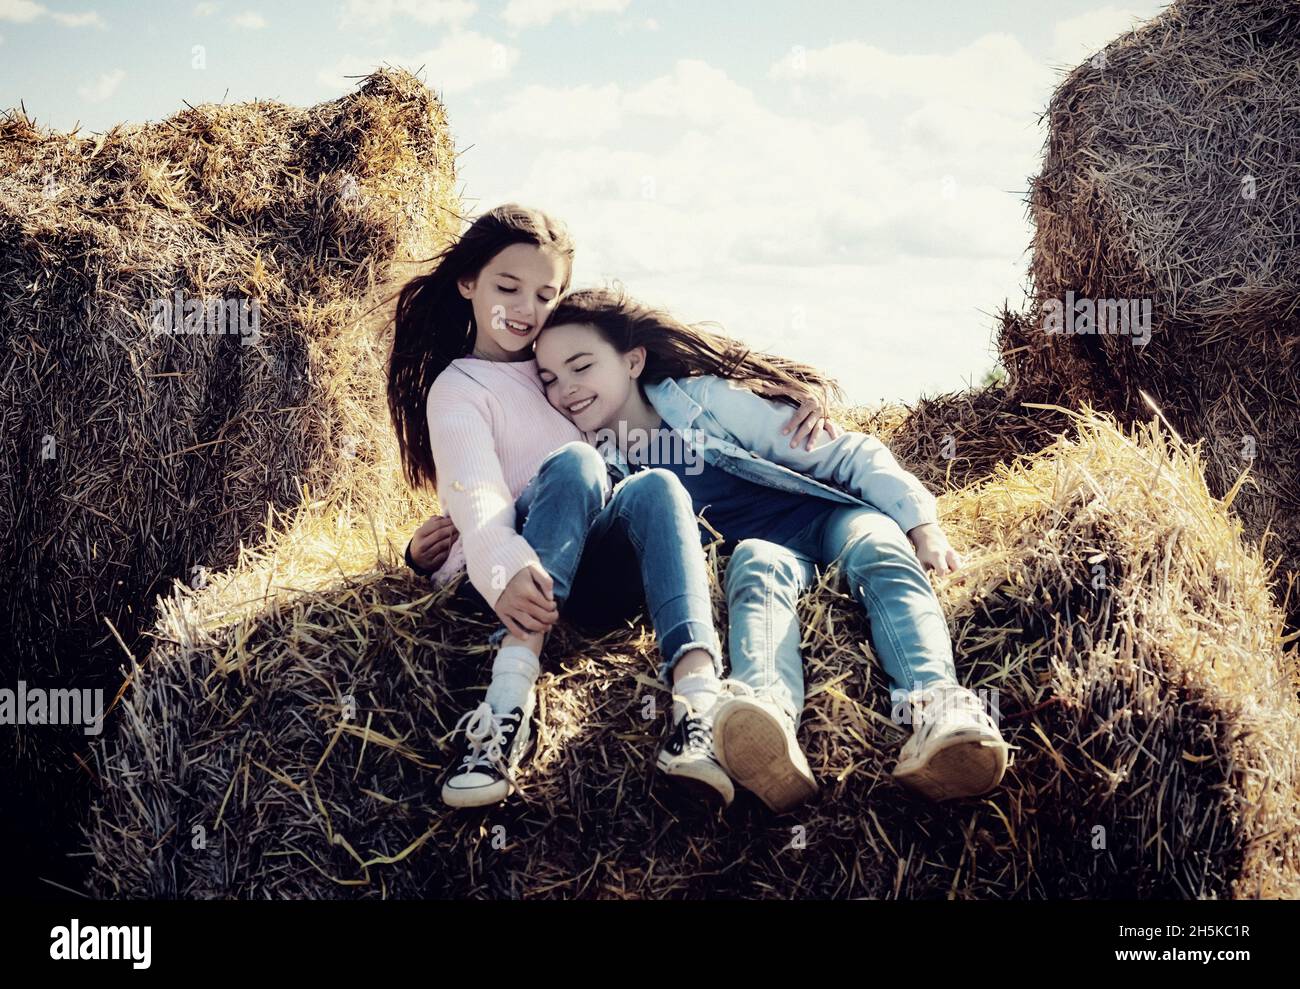 Deux jeunes sœurs passent du temps ensemble pendant qu'elles sont assises sur des balles de foin dans leur ferme familiale; Alcomdale, Alberta, Canada Banque D'Images